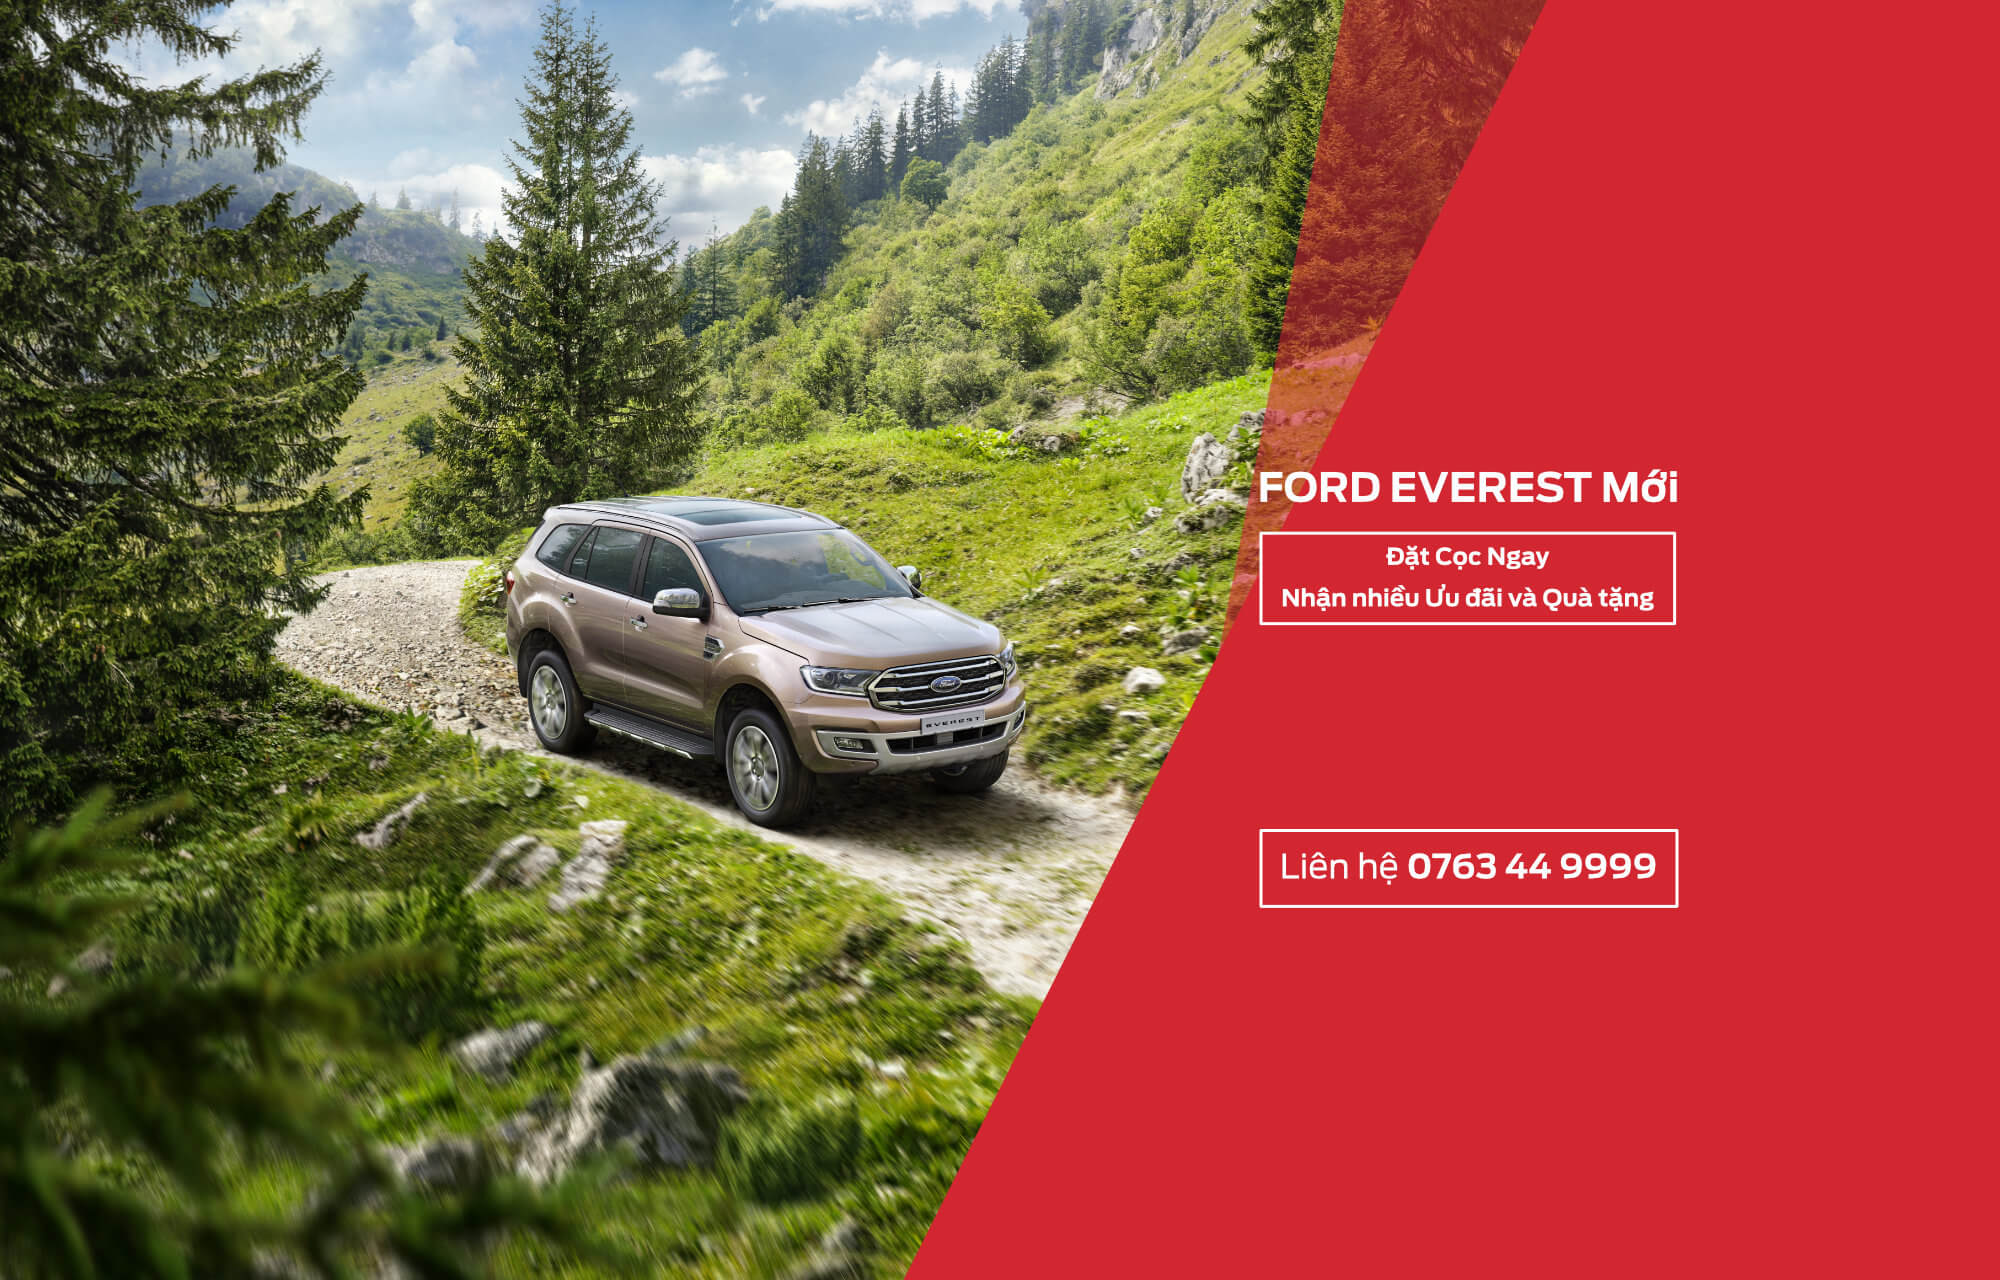 mua Ford Everest 2018 tai Ha Noi Ford